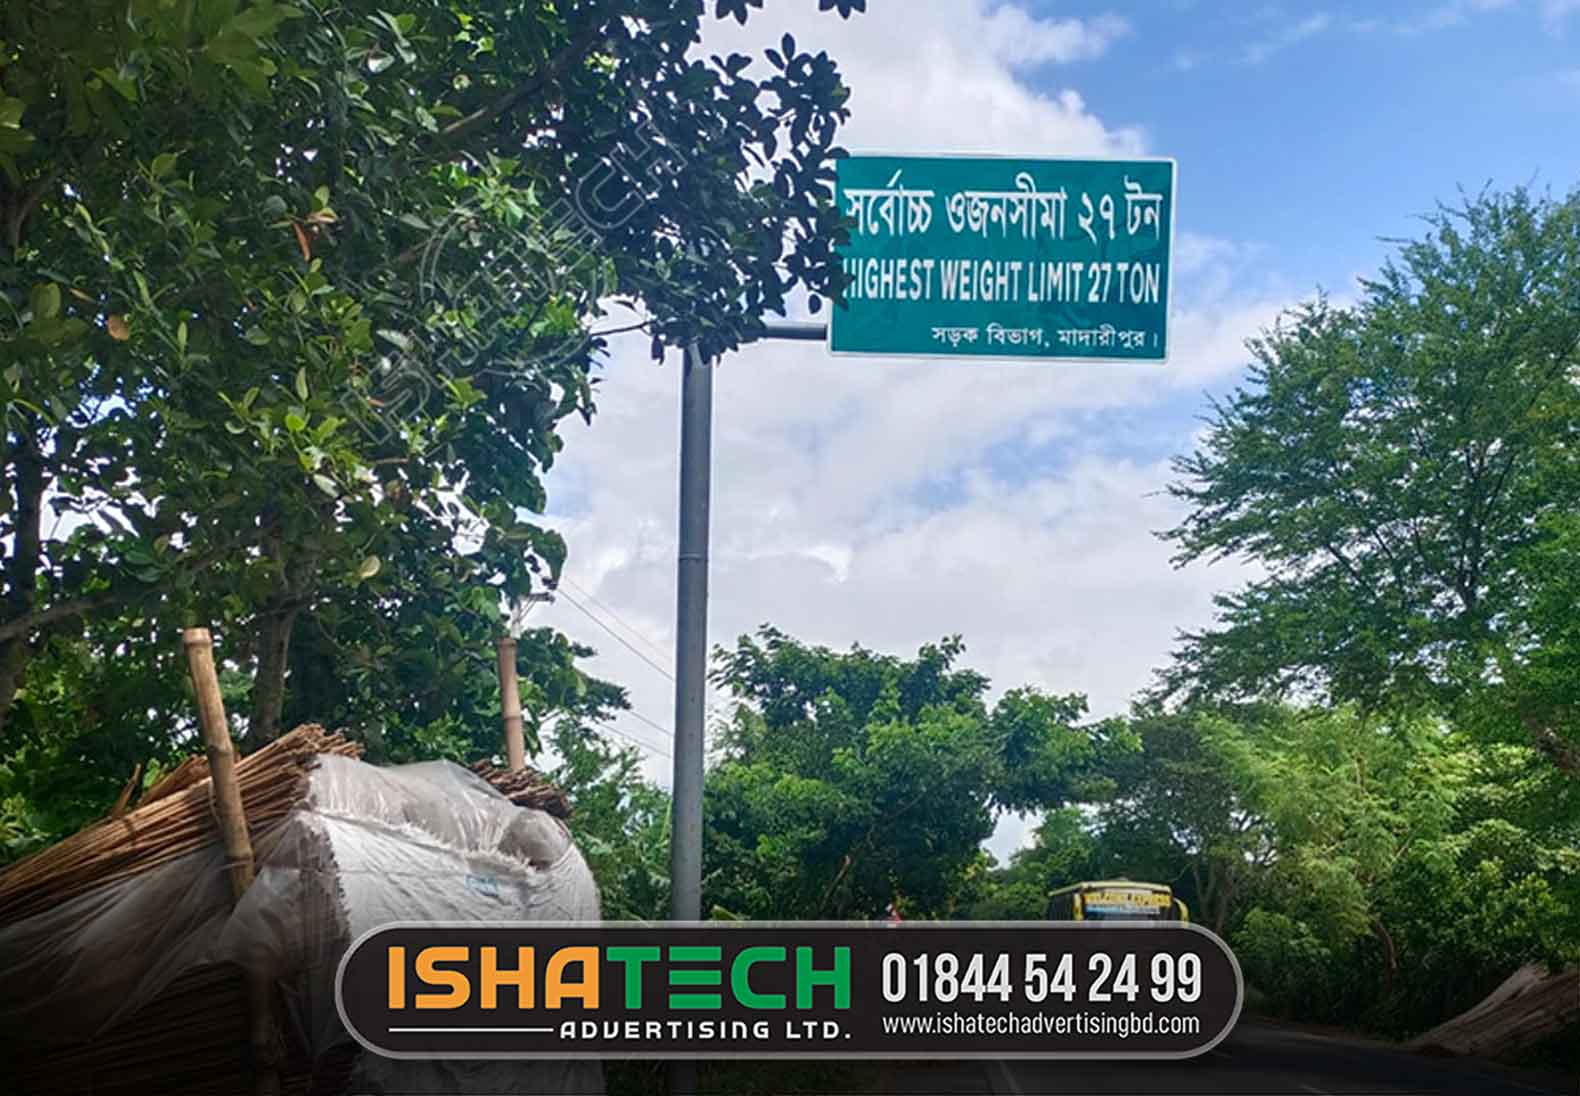 traffic signs bangladesh pdf. traffic signs brta pdf. bangladesh road sign manual bangla. traffic signs in bangladesh. brta road sign. how many traffic signs in bangladesh. traffic signs pdf free download. traffic sign in bangladesh pdf bangla.